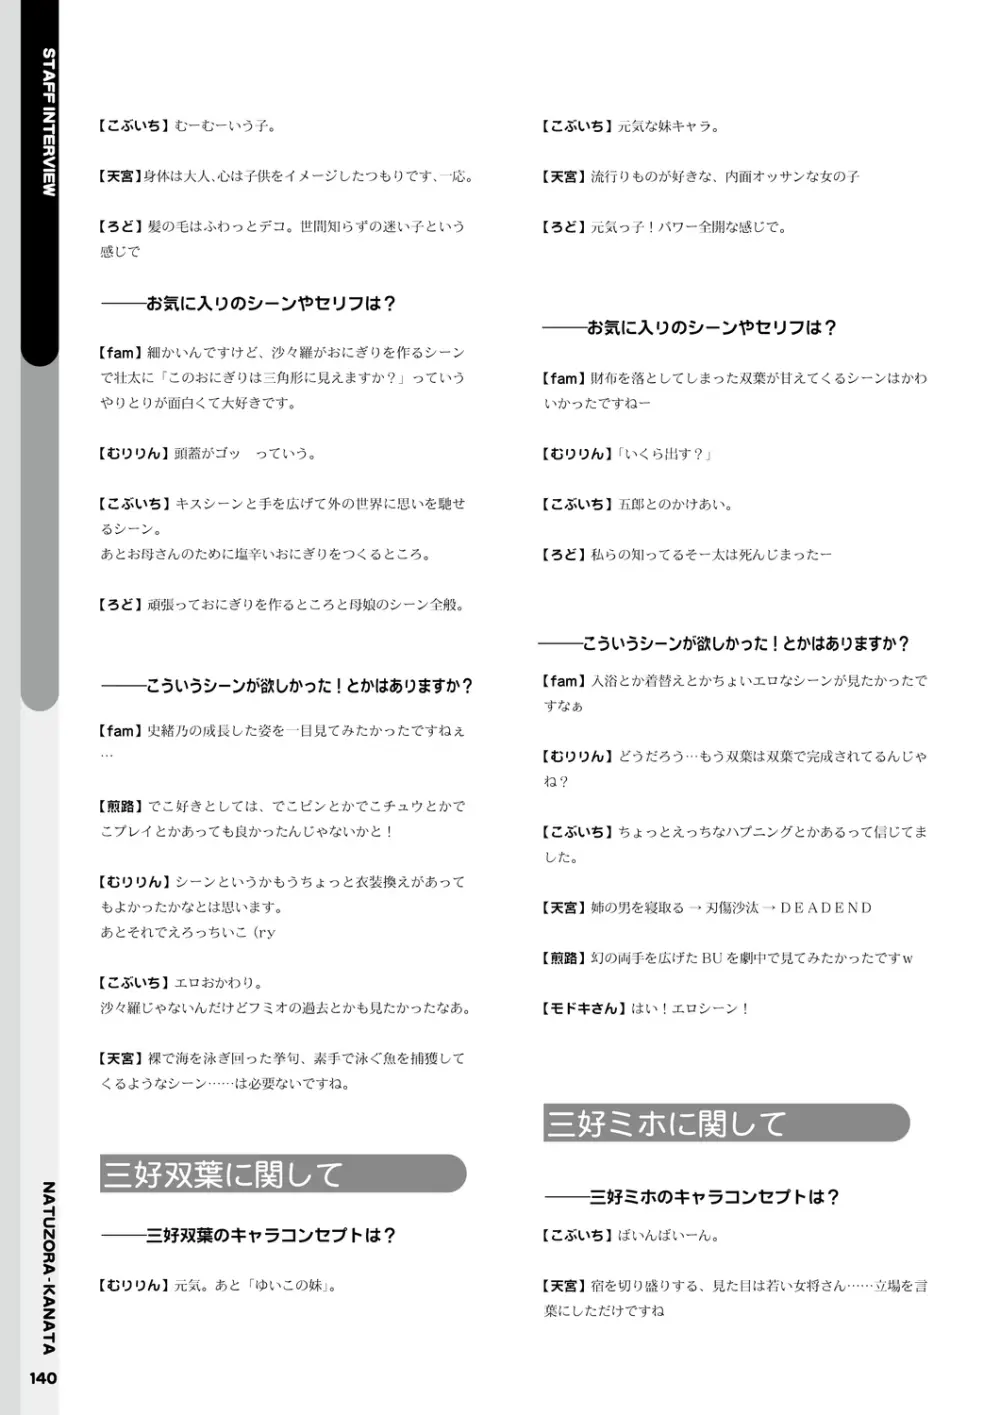 夏空カナタ オフィシャル・ビジュアルファンブック 142ページ